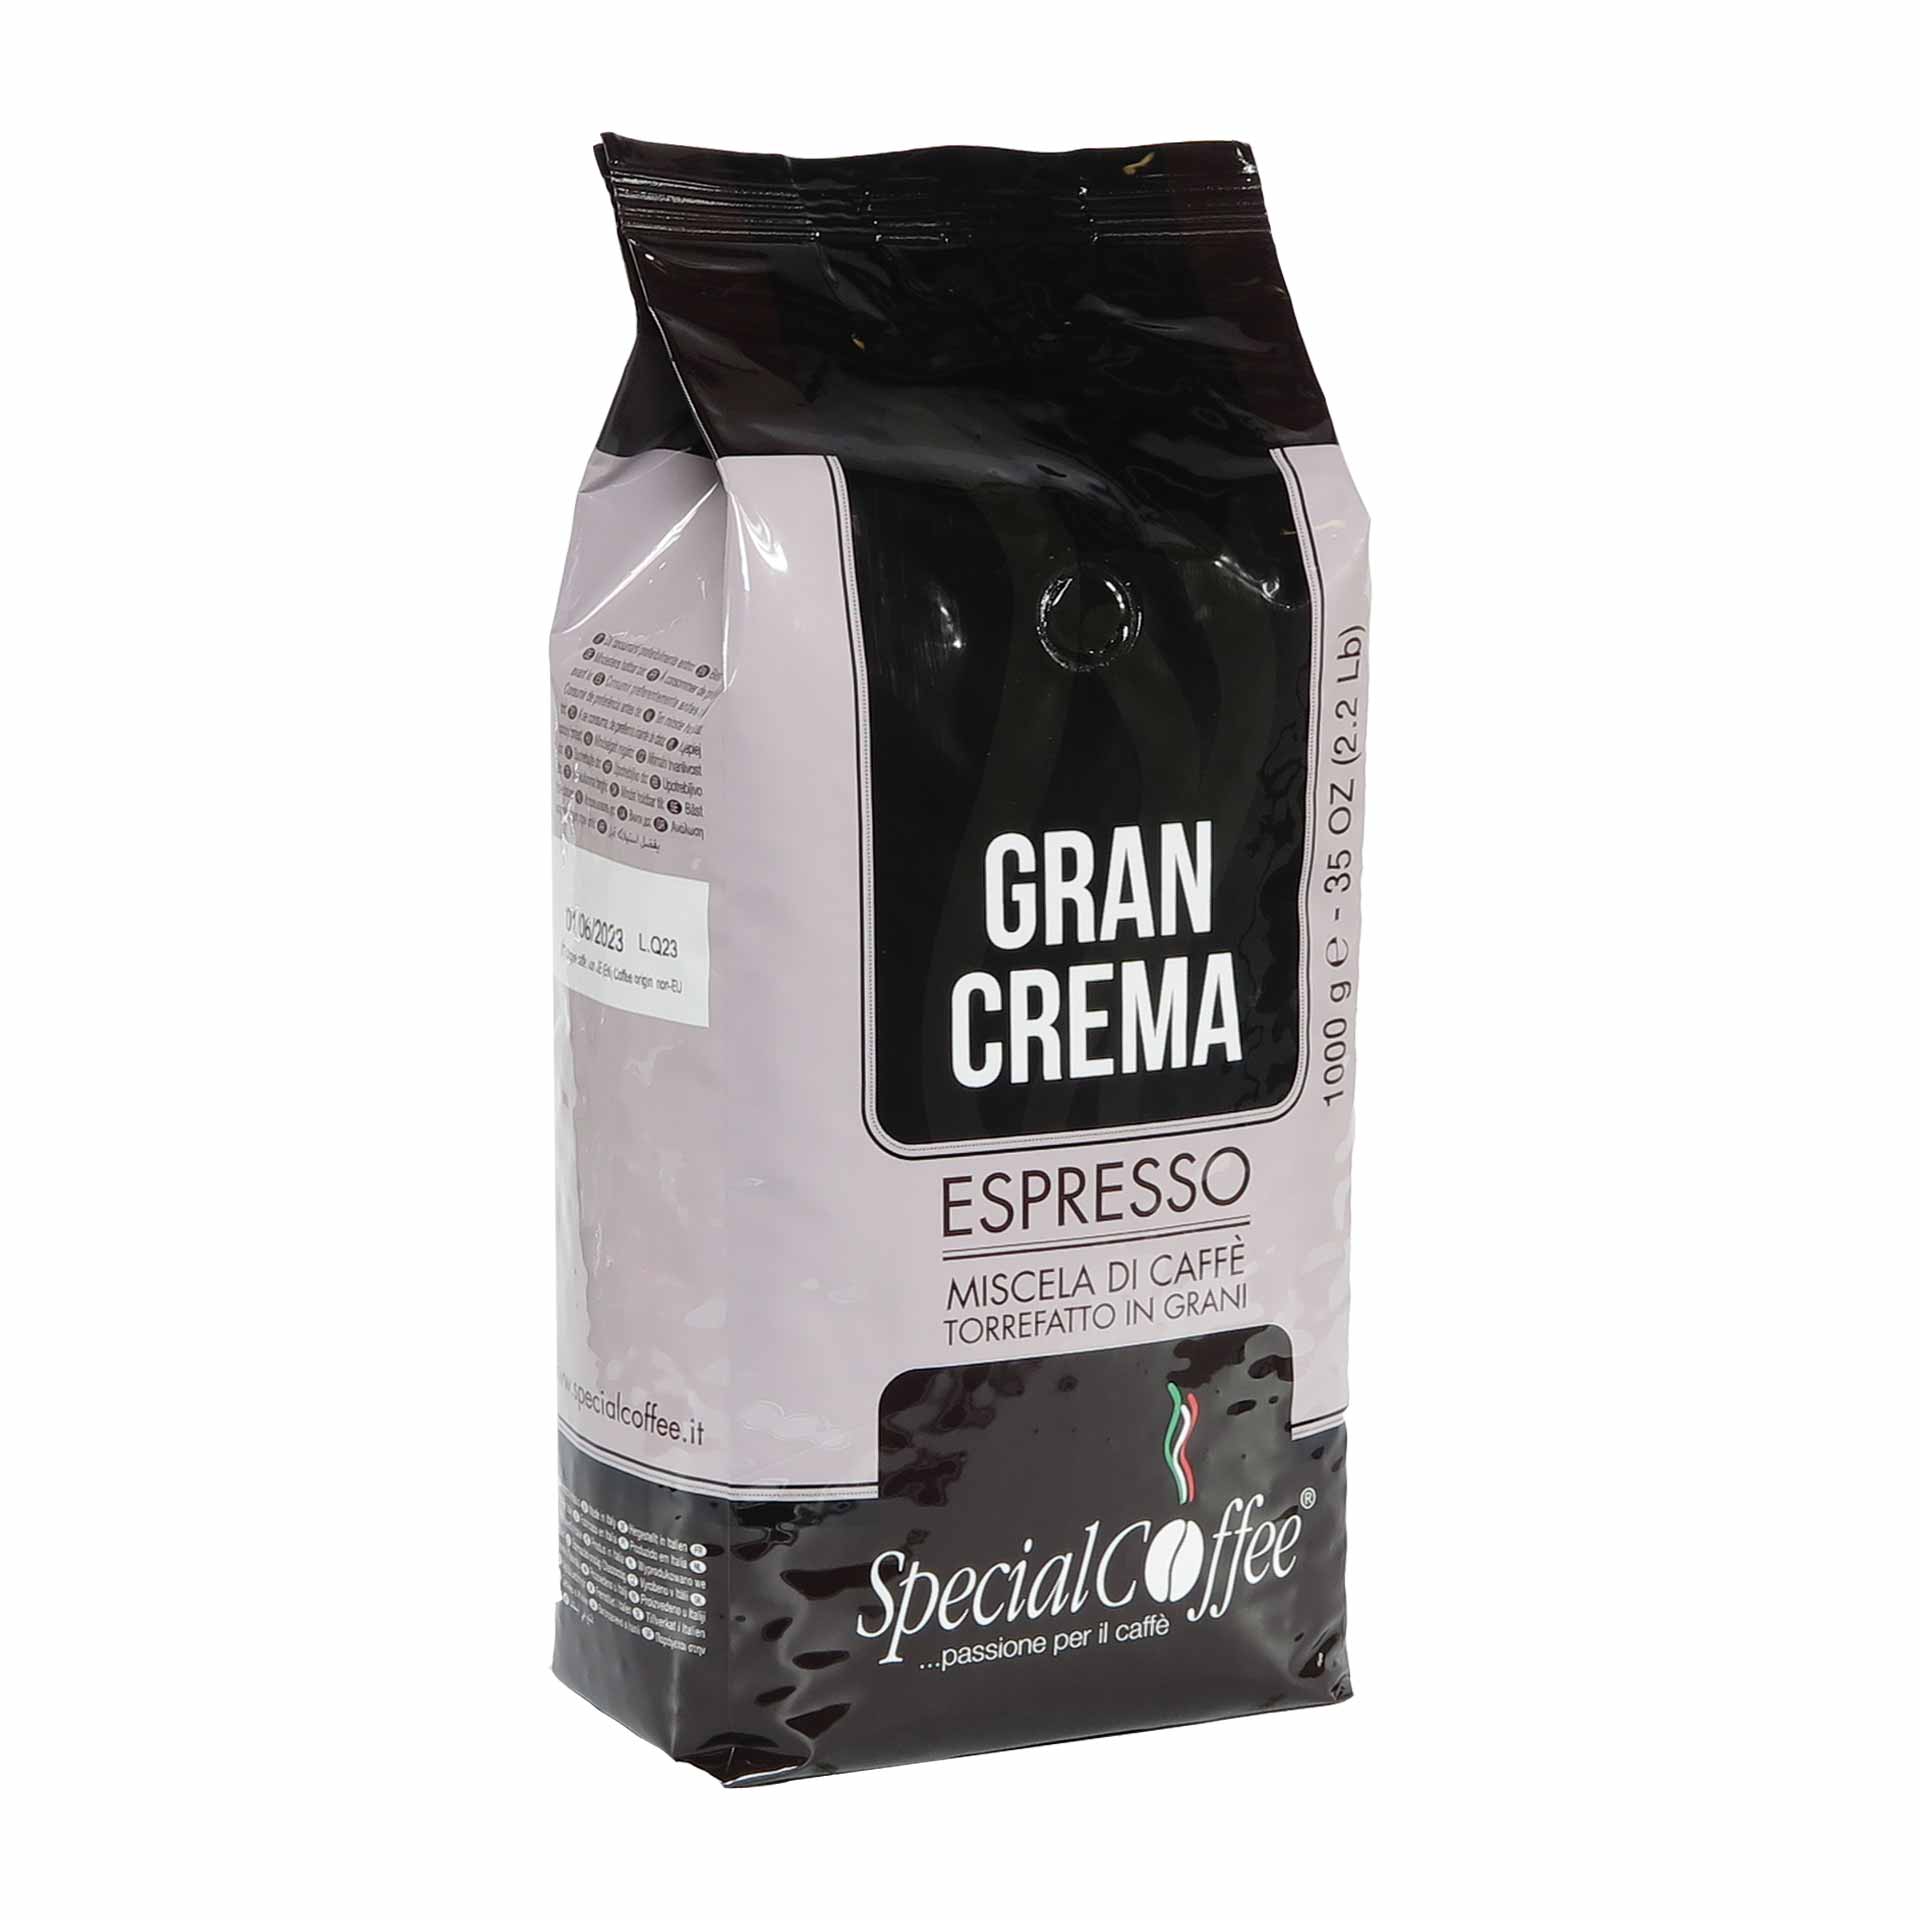 Special Coffee Espresso Gran Crema 1000g Bohnen